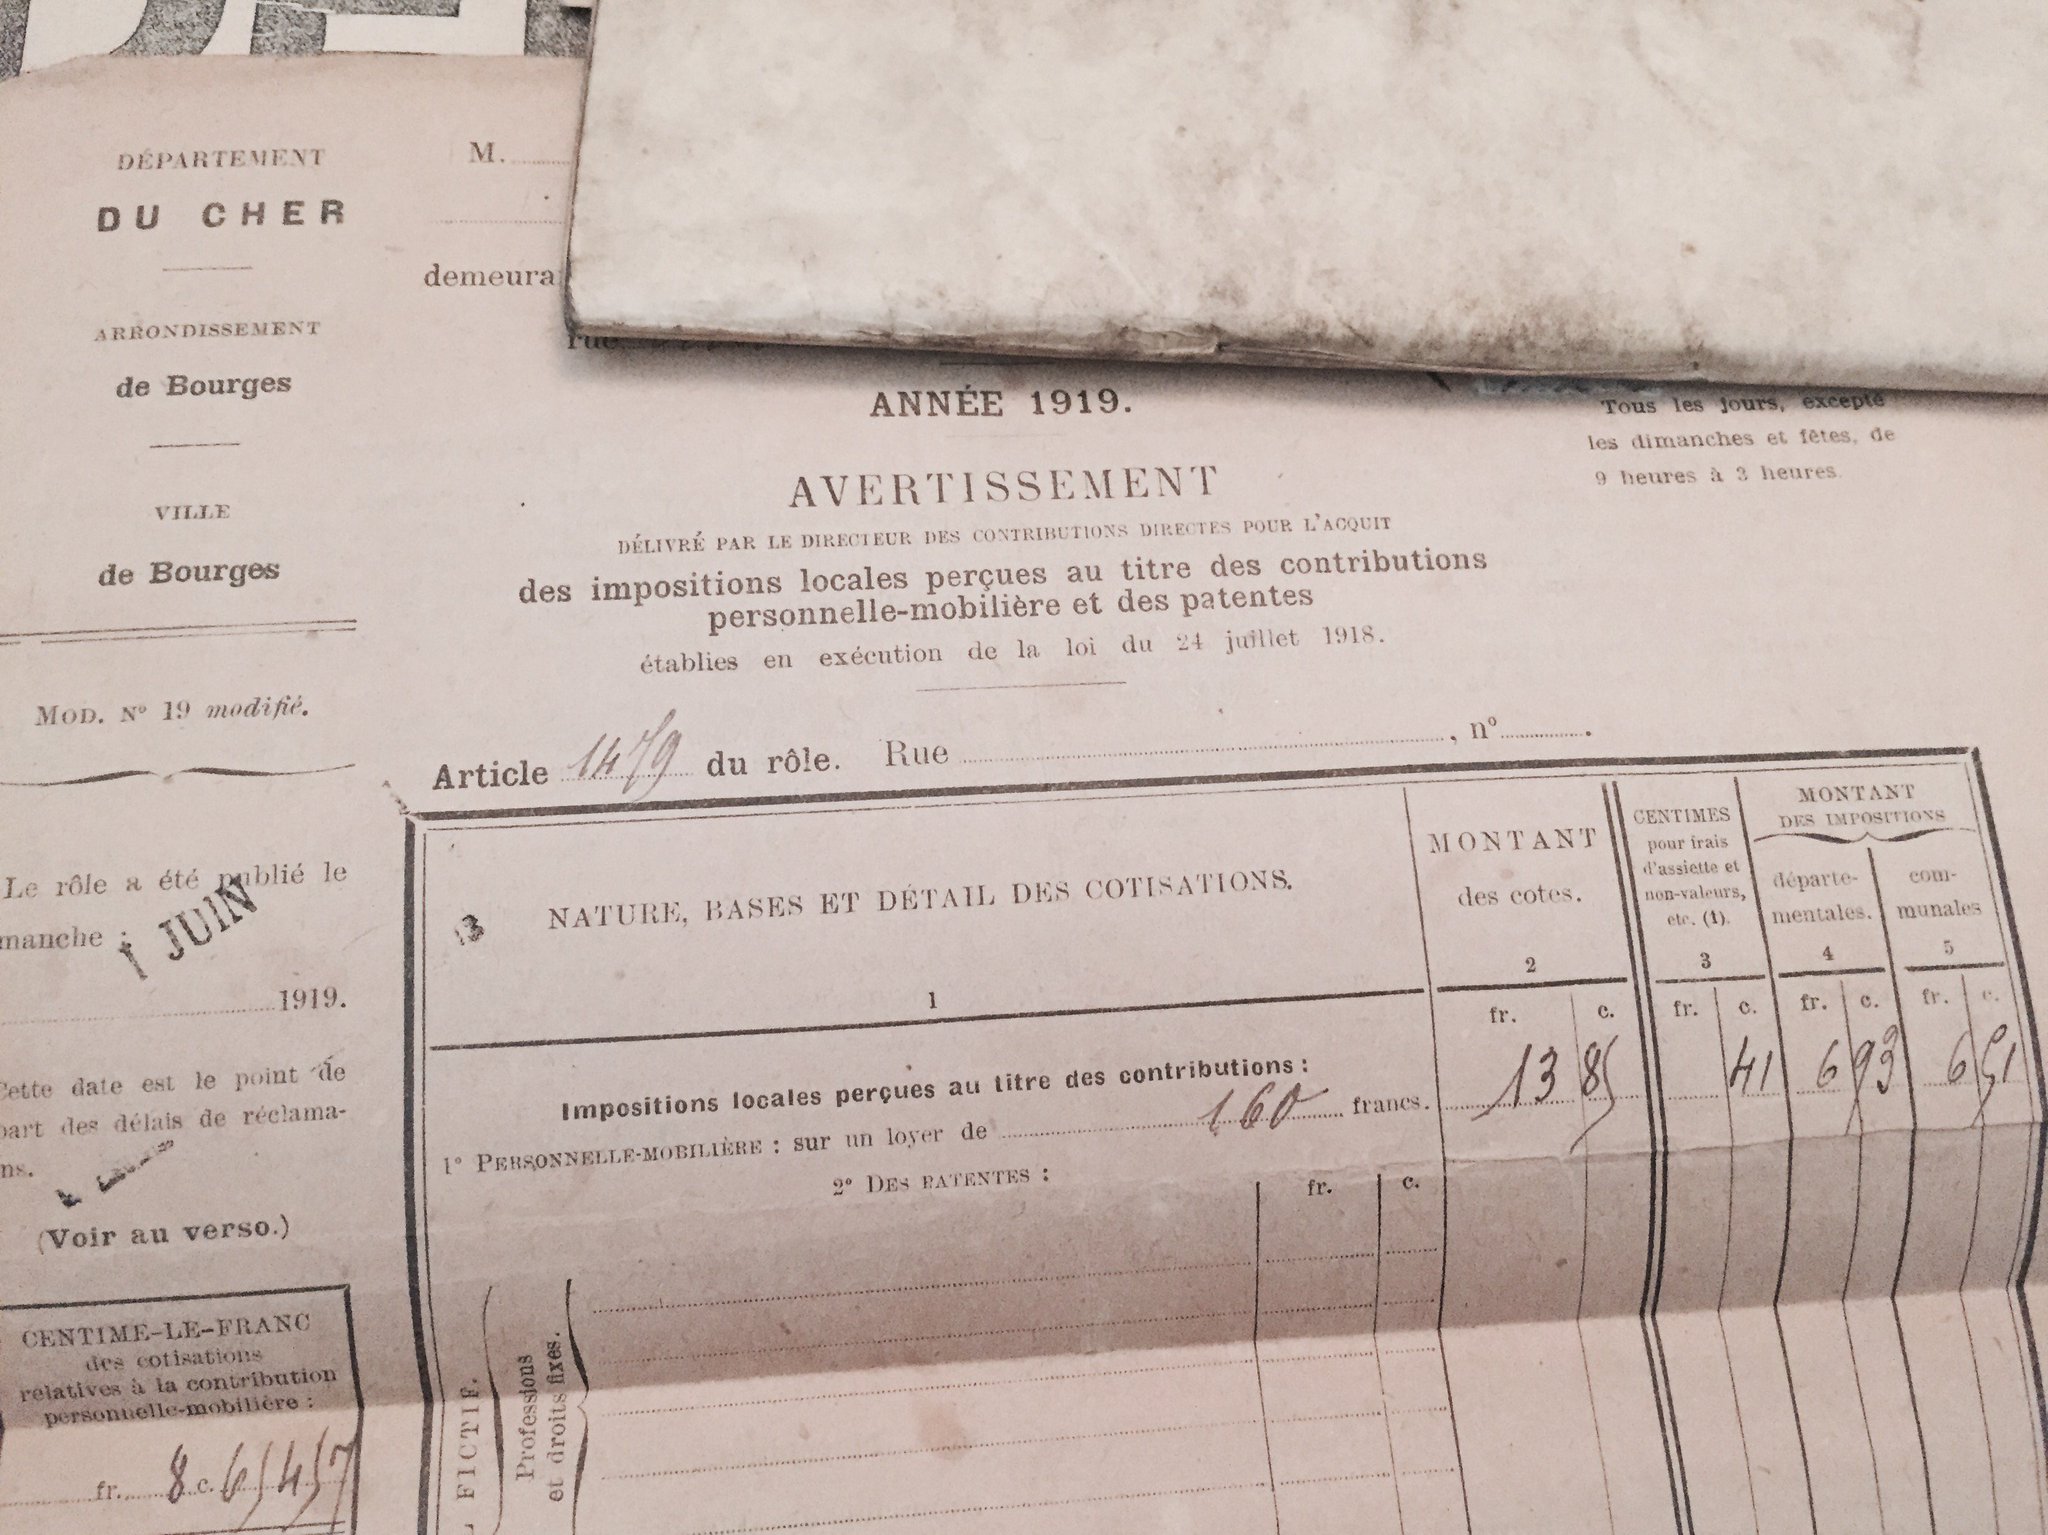 Et une fiche d'impôts locaux de 1919 à Bourges https://t.co/2yHOVFR9Q8